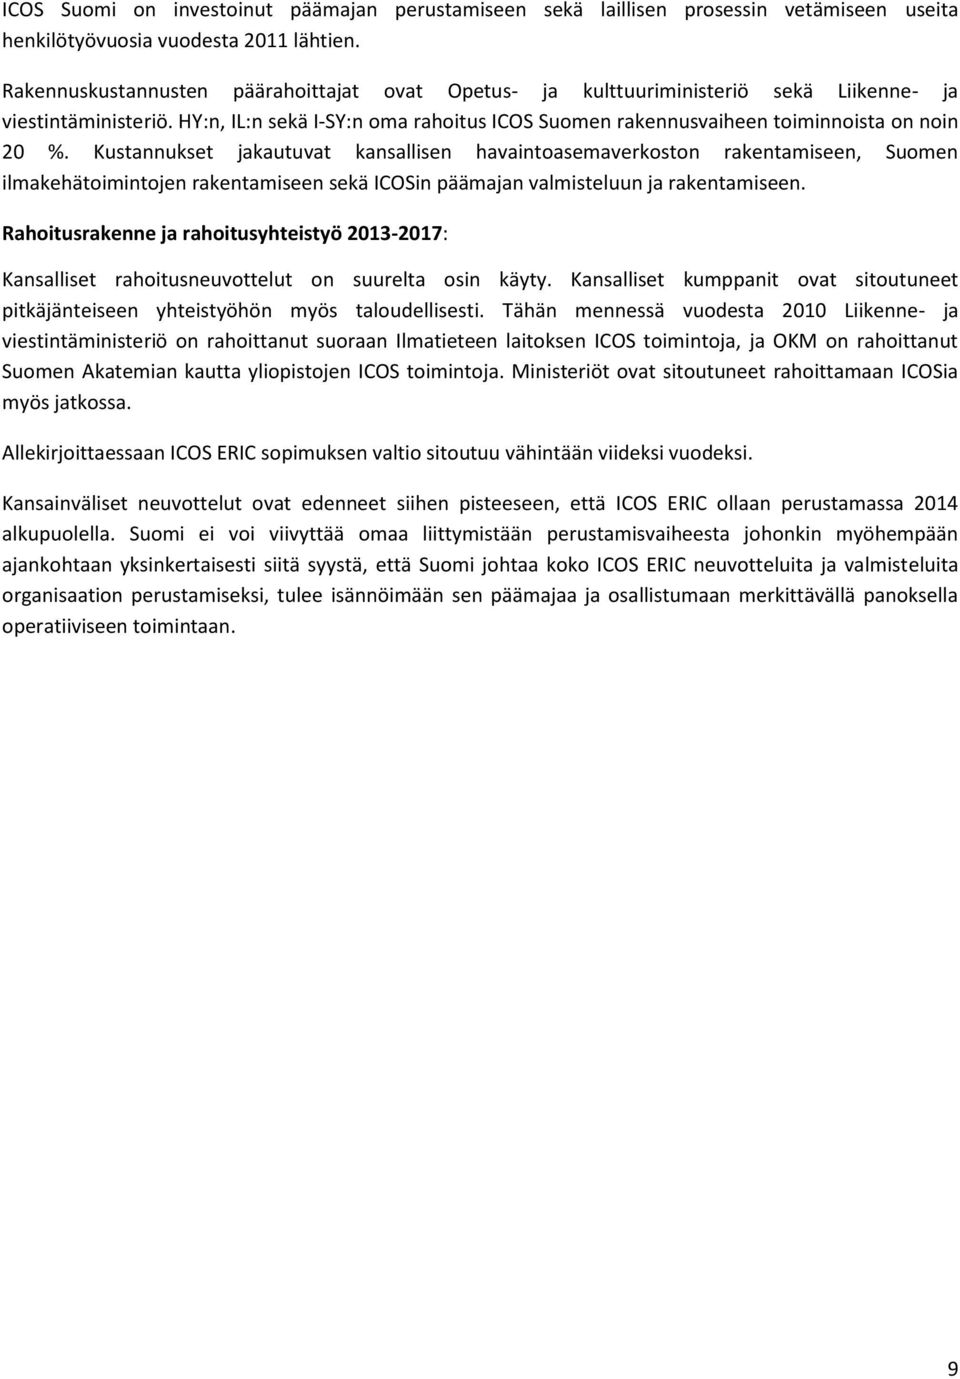 HY:n, IL:n sekä I-SY:n oma rahoitus ICOS Suomen rakennusvaiheen toiminnoista on noin 20 %.